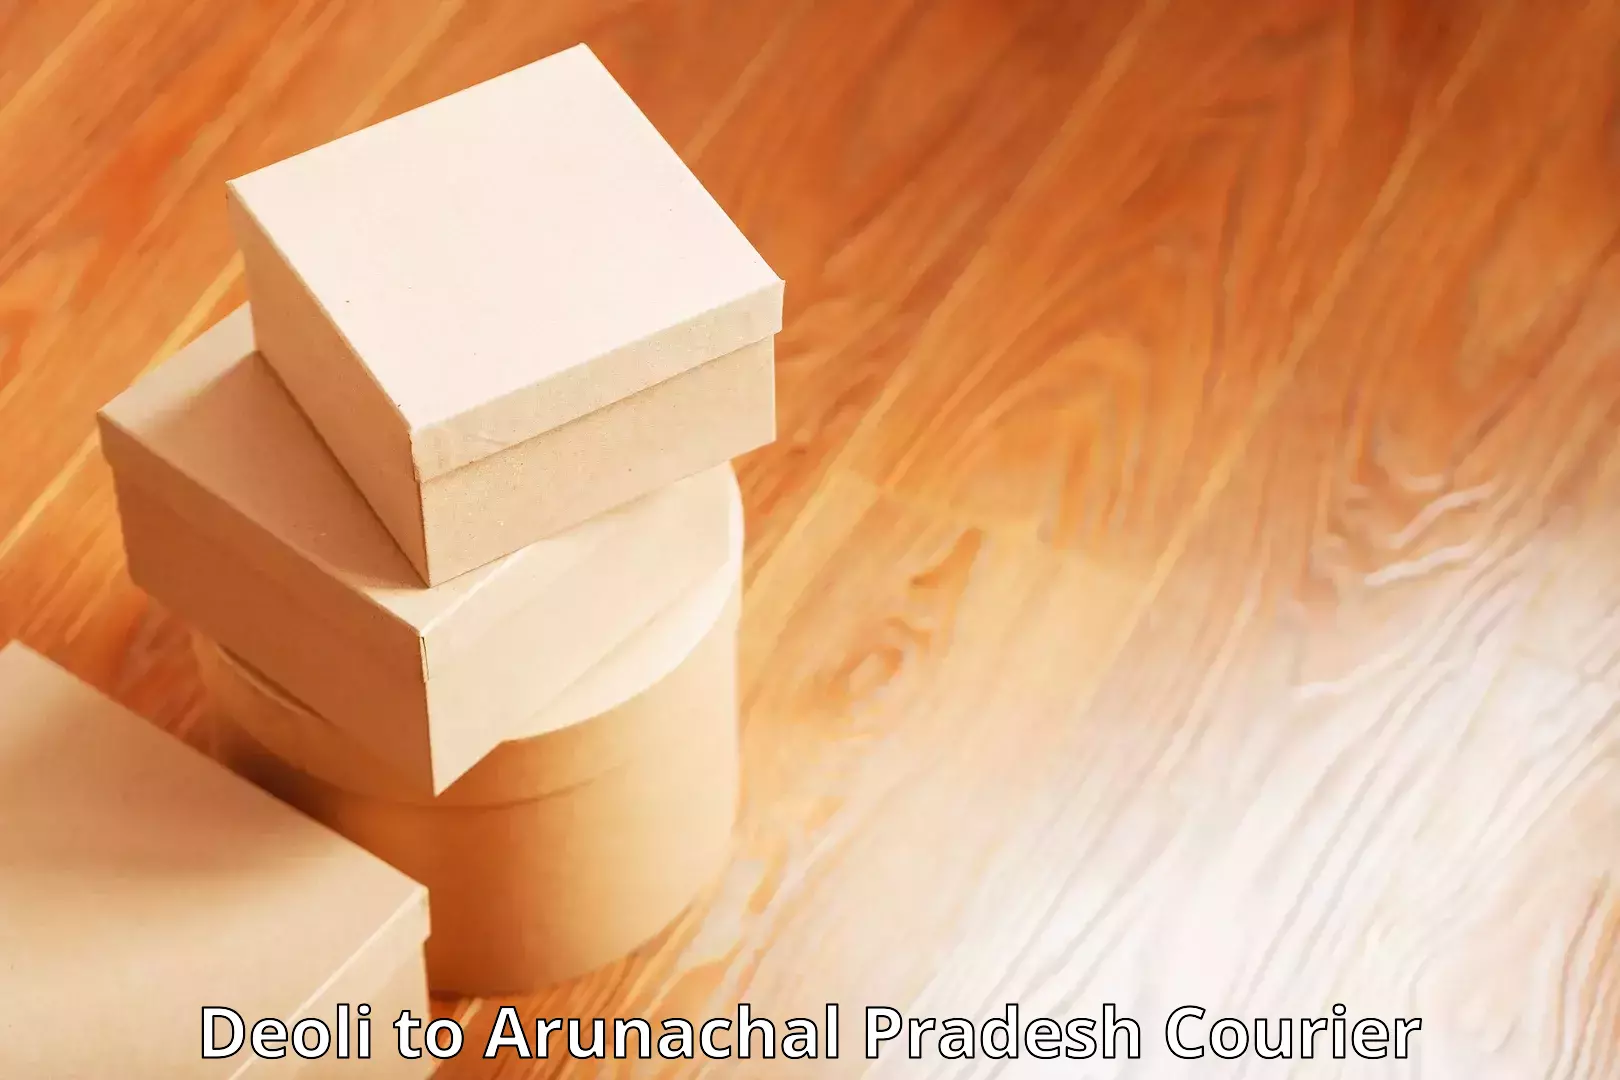 Cargo courier service Deoli to Arunachal Pradesh